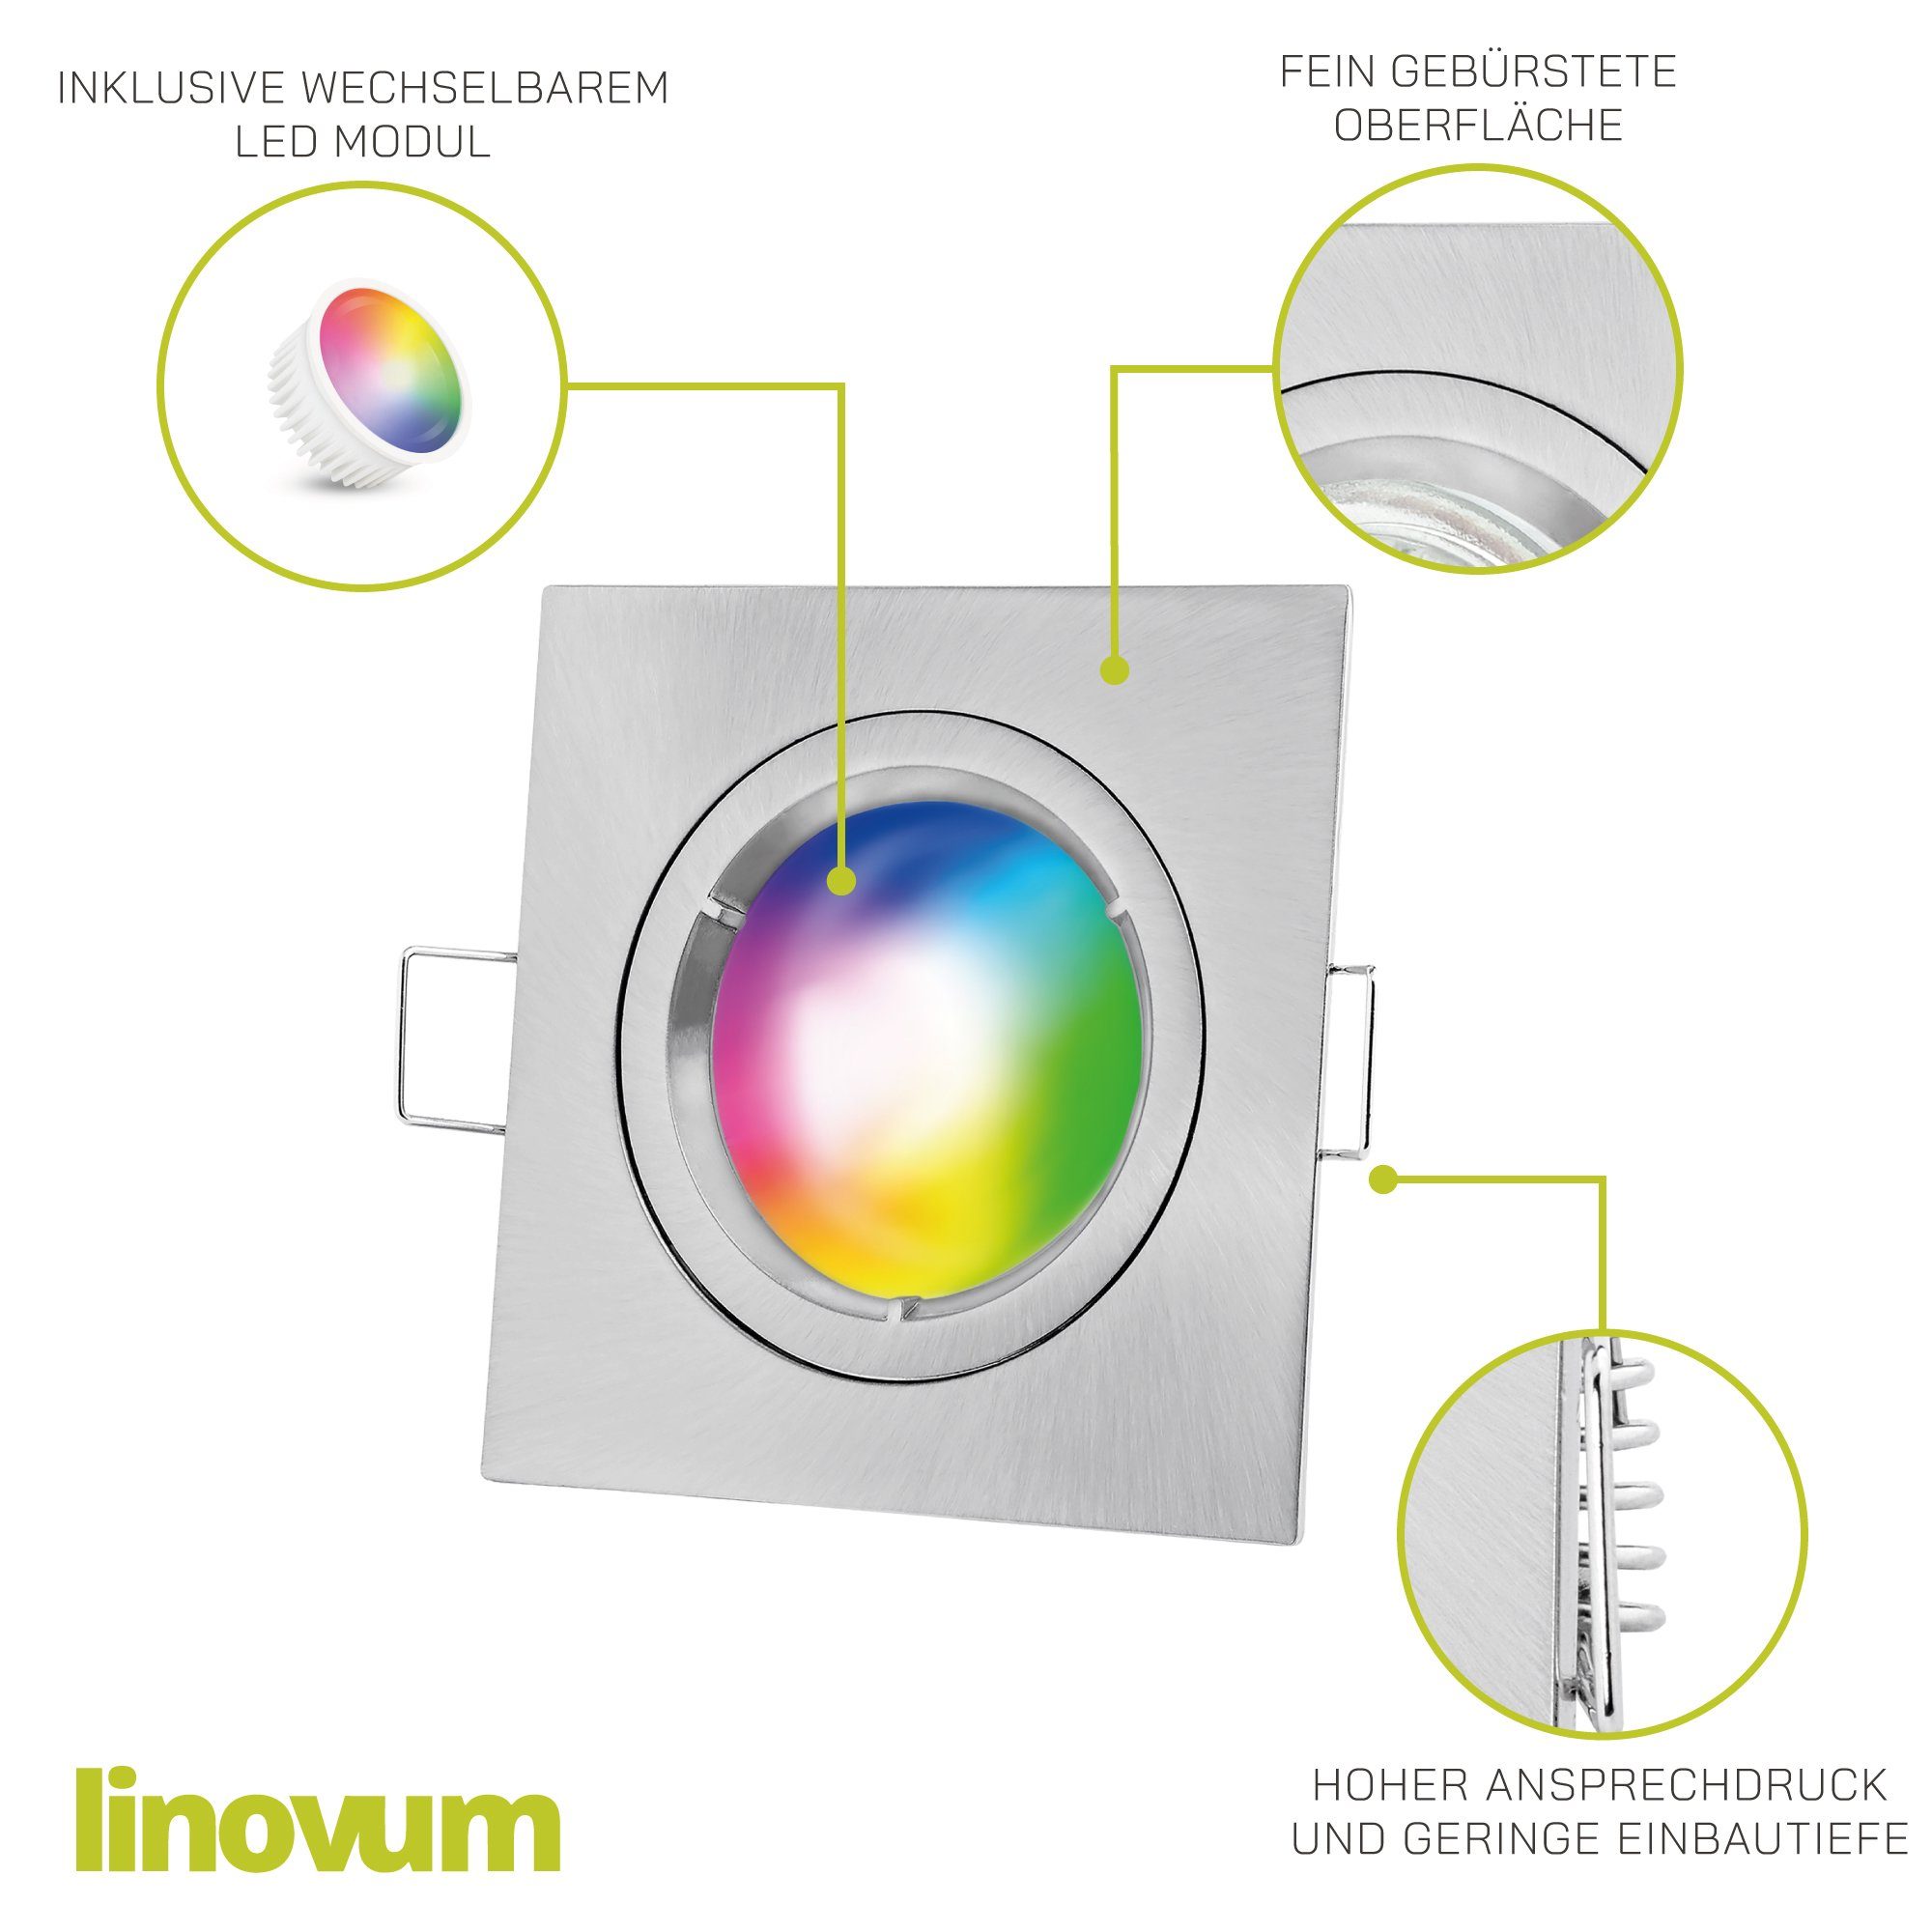 inkl. linovum inklusive, Einbaustrahler gebuerstet Einbaustrahler silber GU10, Leuchtmittel LED eckig flach Decken Leuchtmittel inklusive